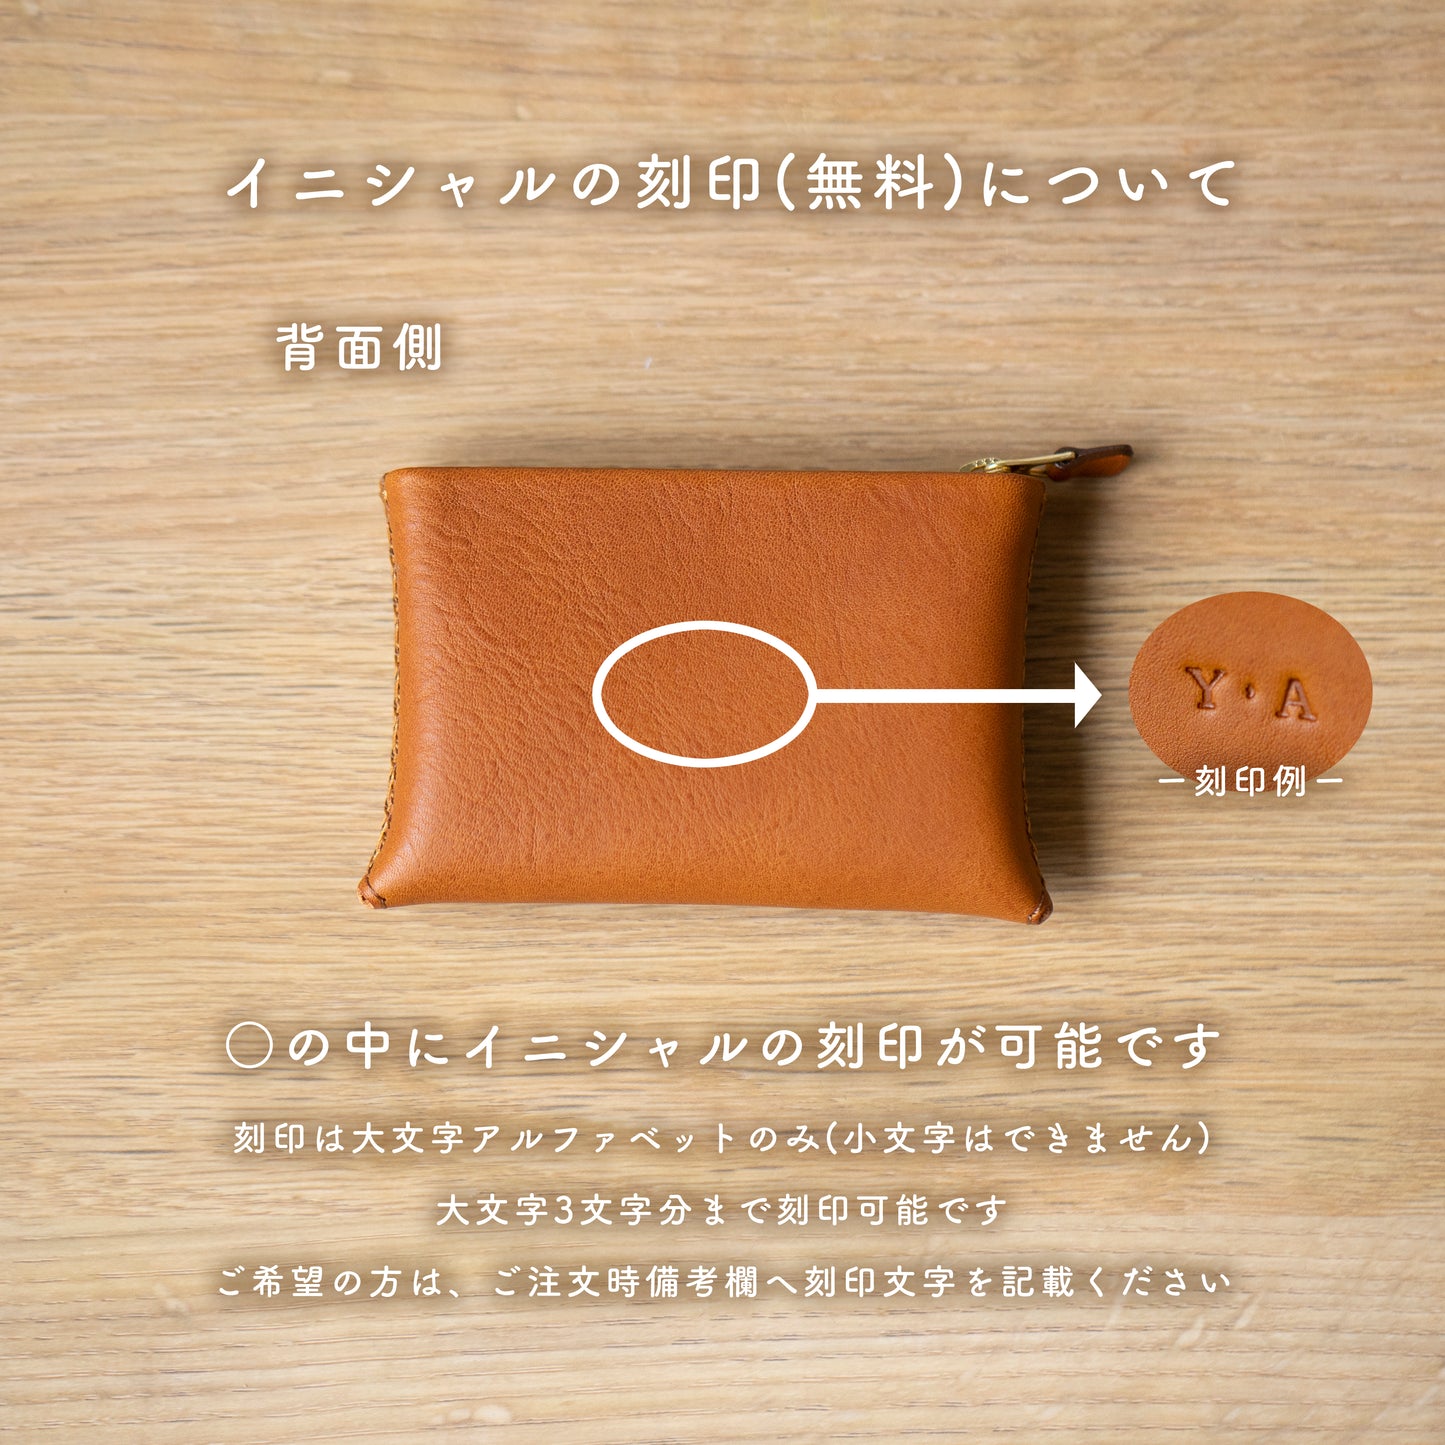 ジグザグ手縫いのミニ財布 (オールドピンク)